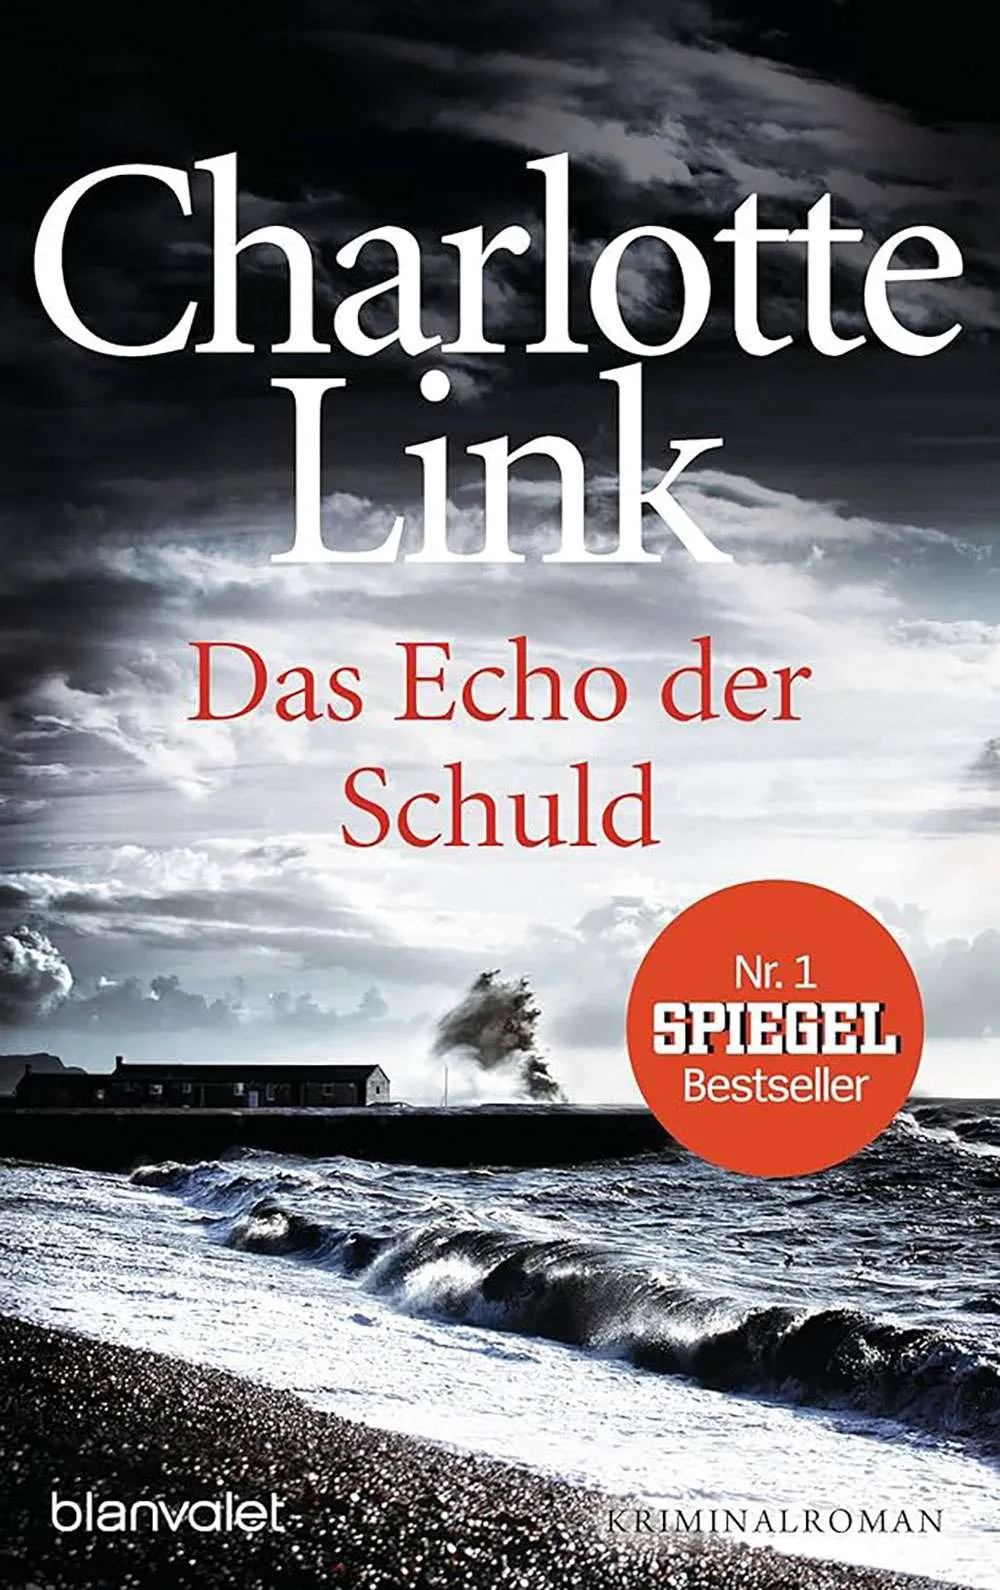 Charlotte Link Das Echo der Schuld Buch Review Kriminalroman Krimi Krimiroman